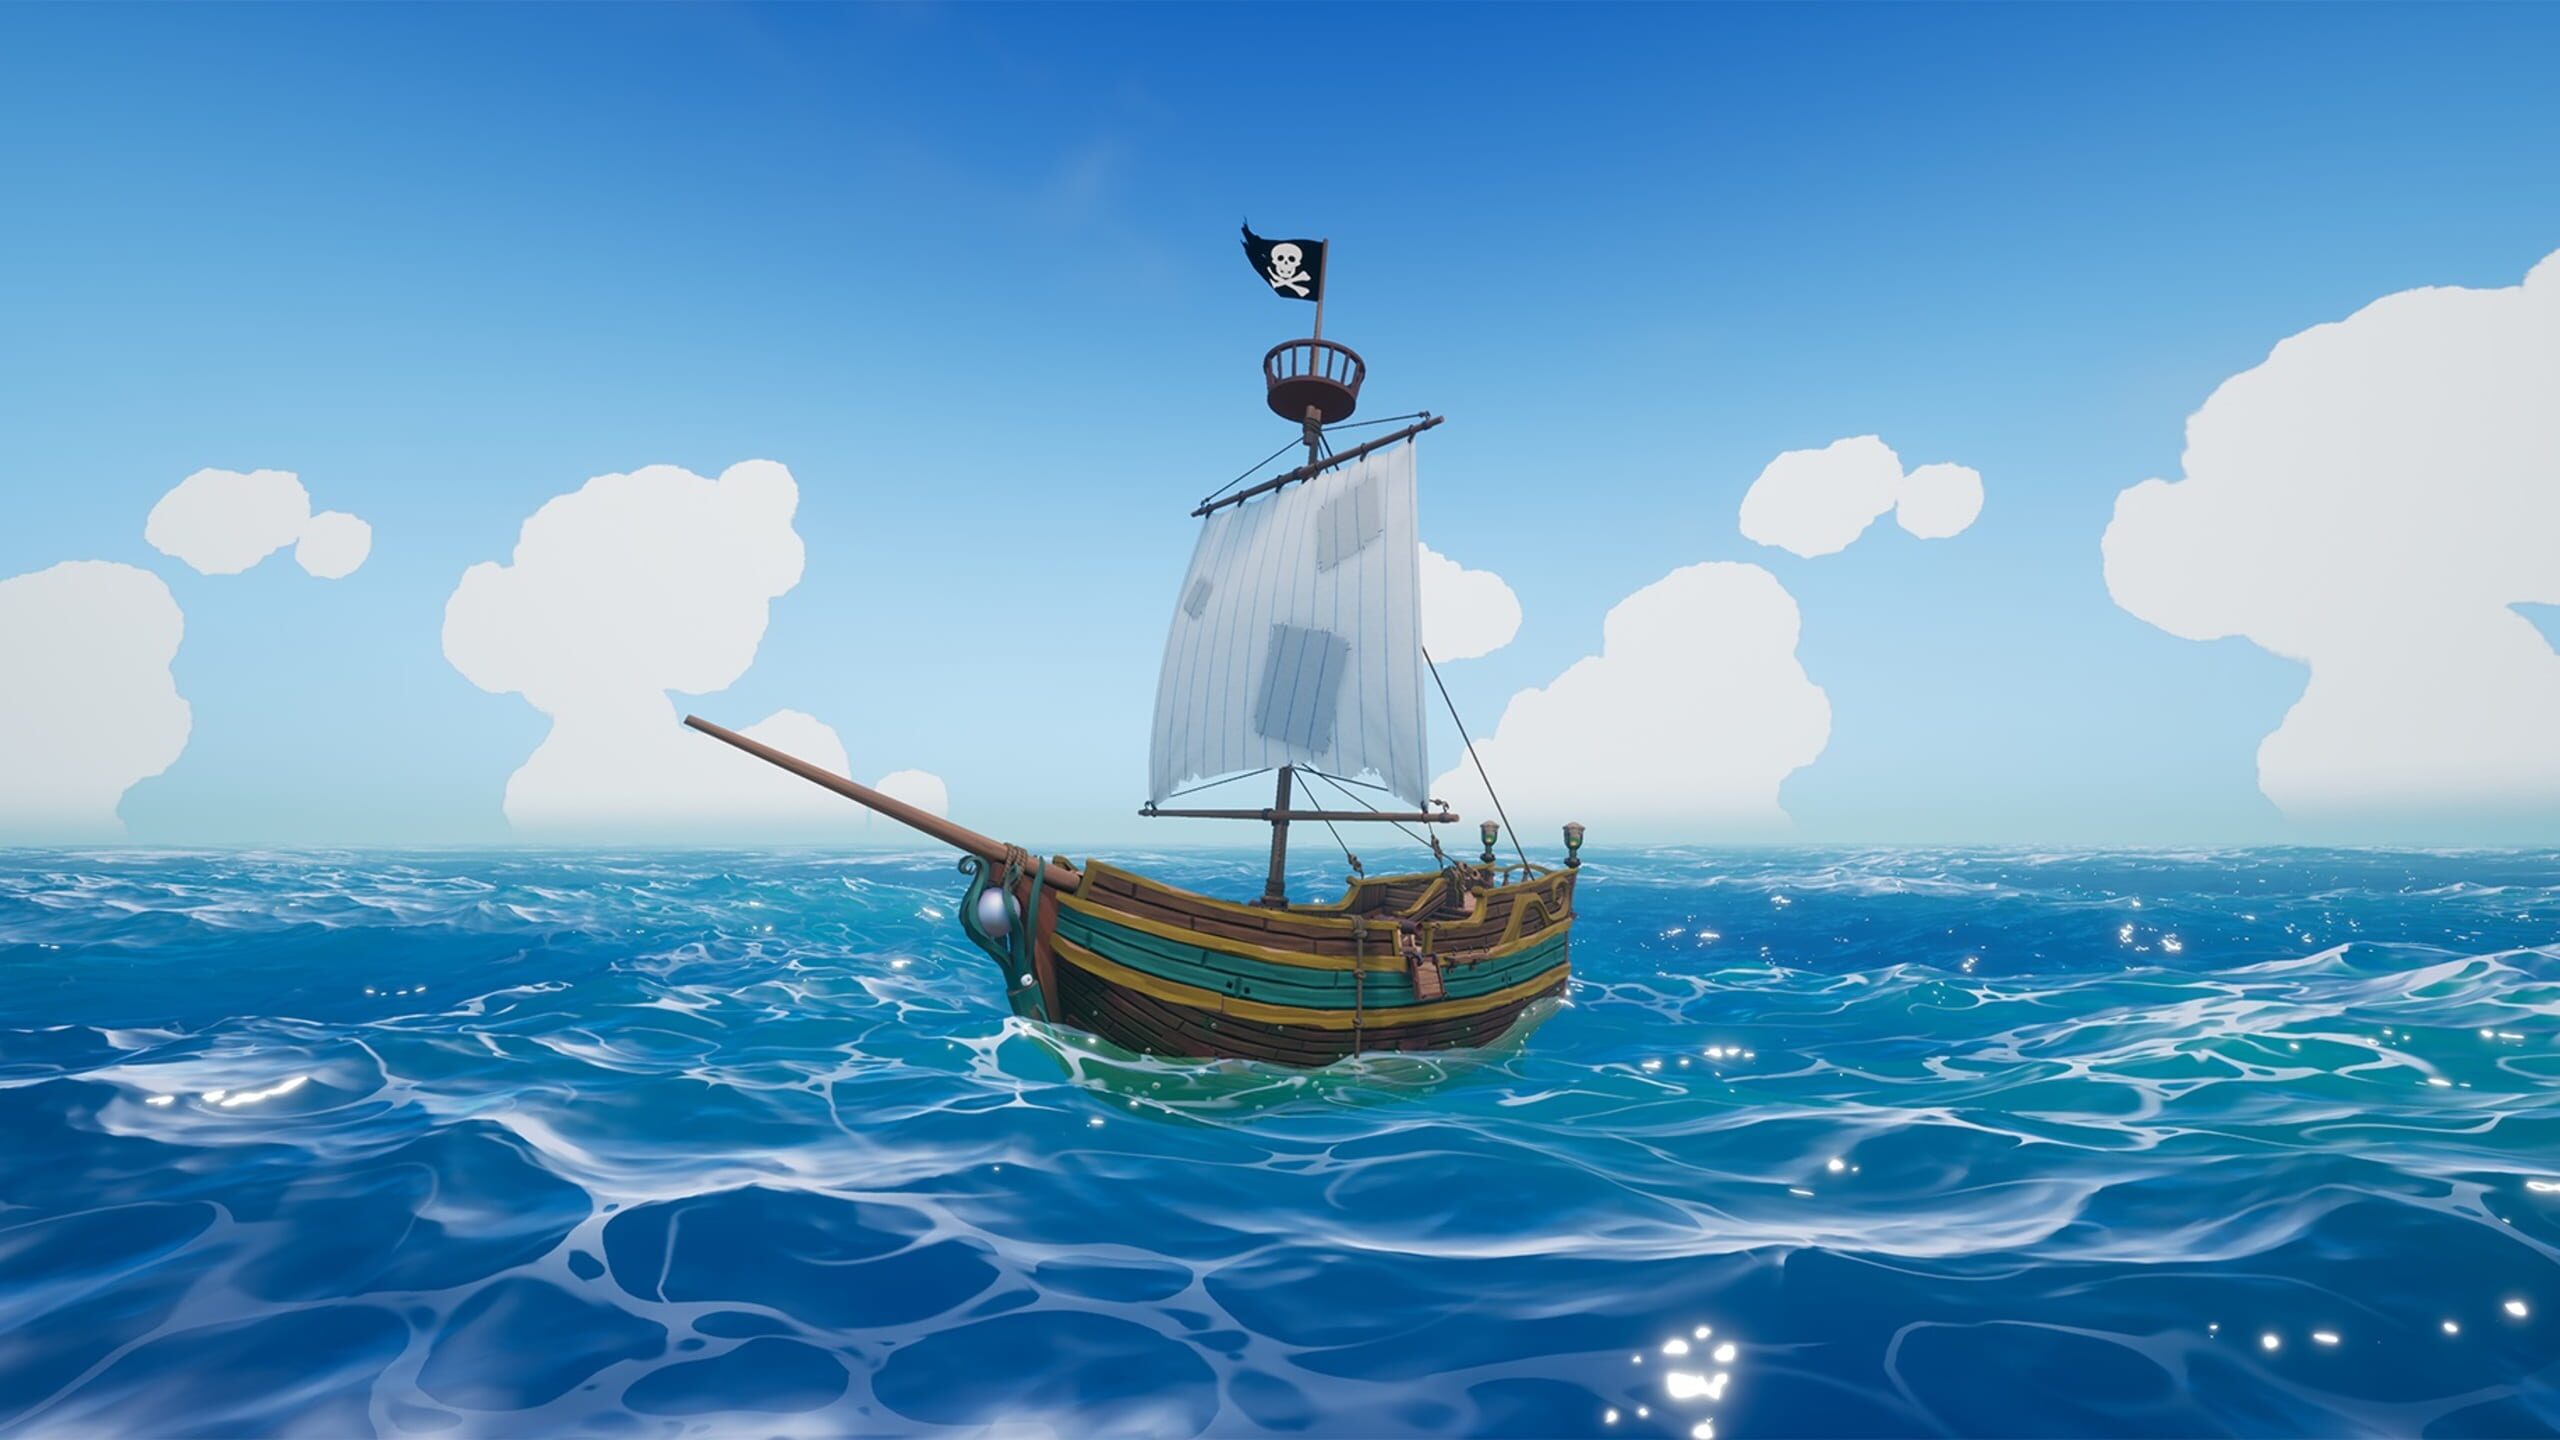 Игры дети корабли. Blazing Sails: Pirate Battle Royale 2020. Игра для детей корабль и Парус. Sailing Sea игра. Blazing Sails Sea of Thieves.